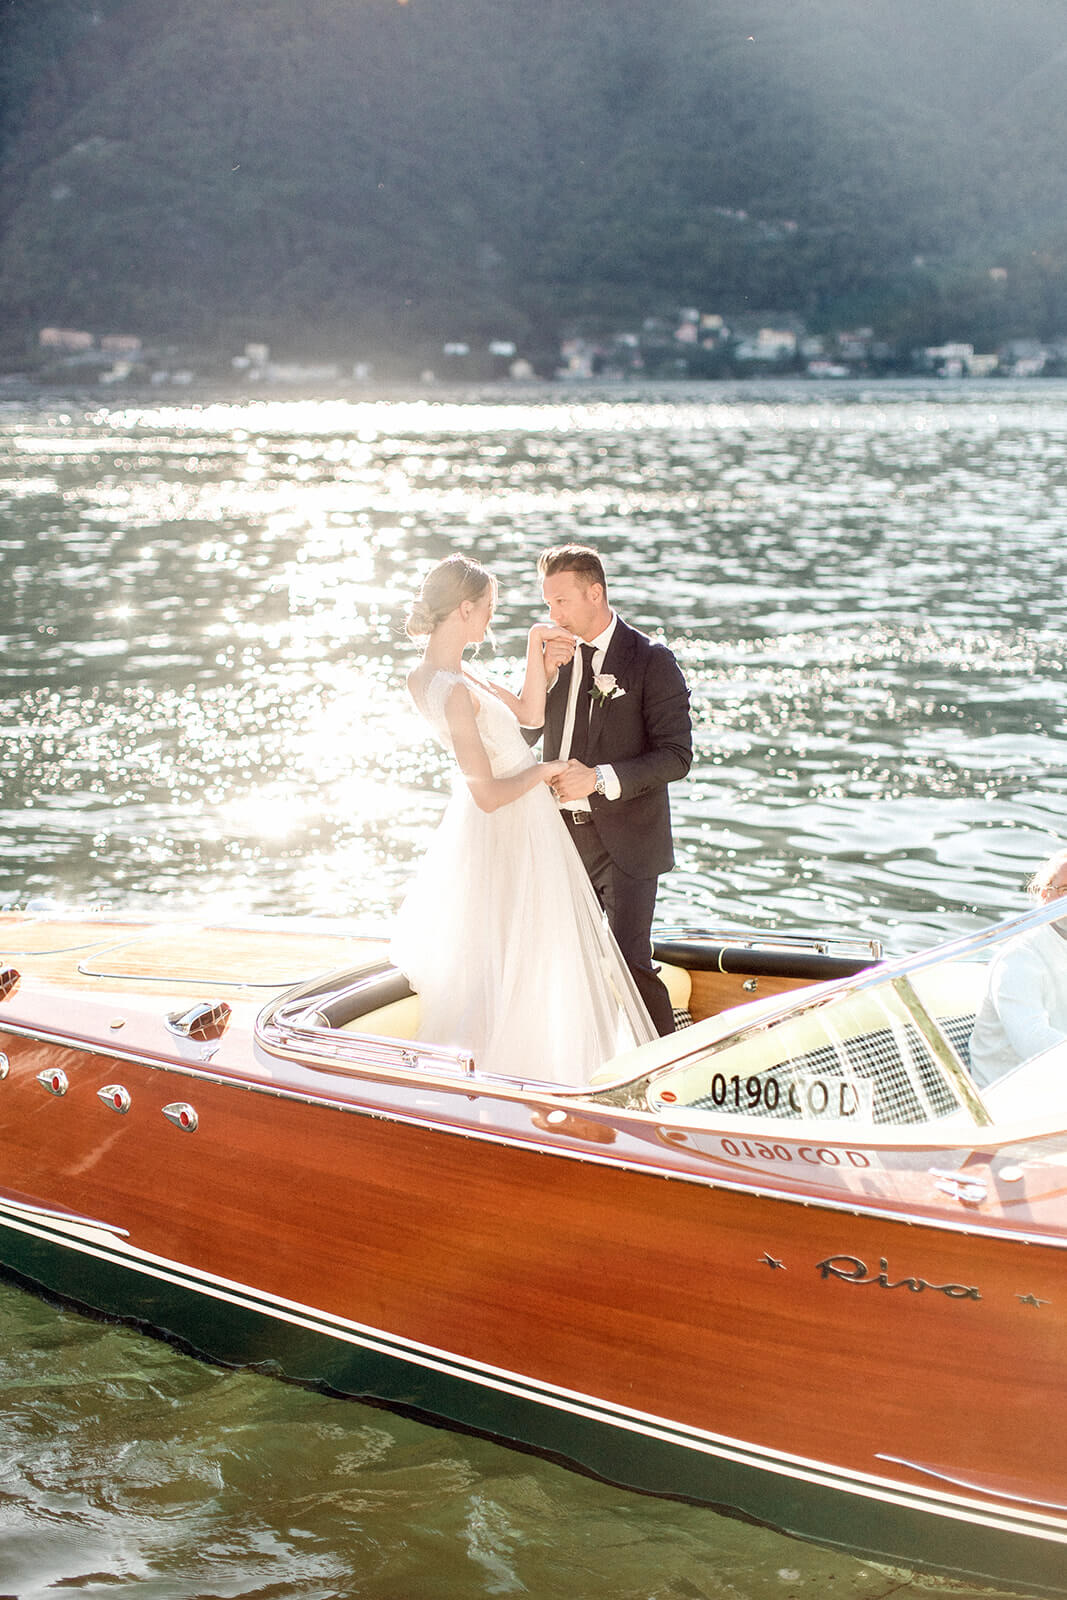 Lake como newlyweds on boat